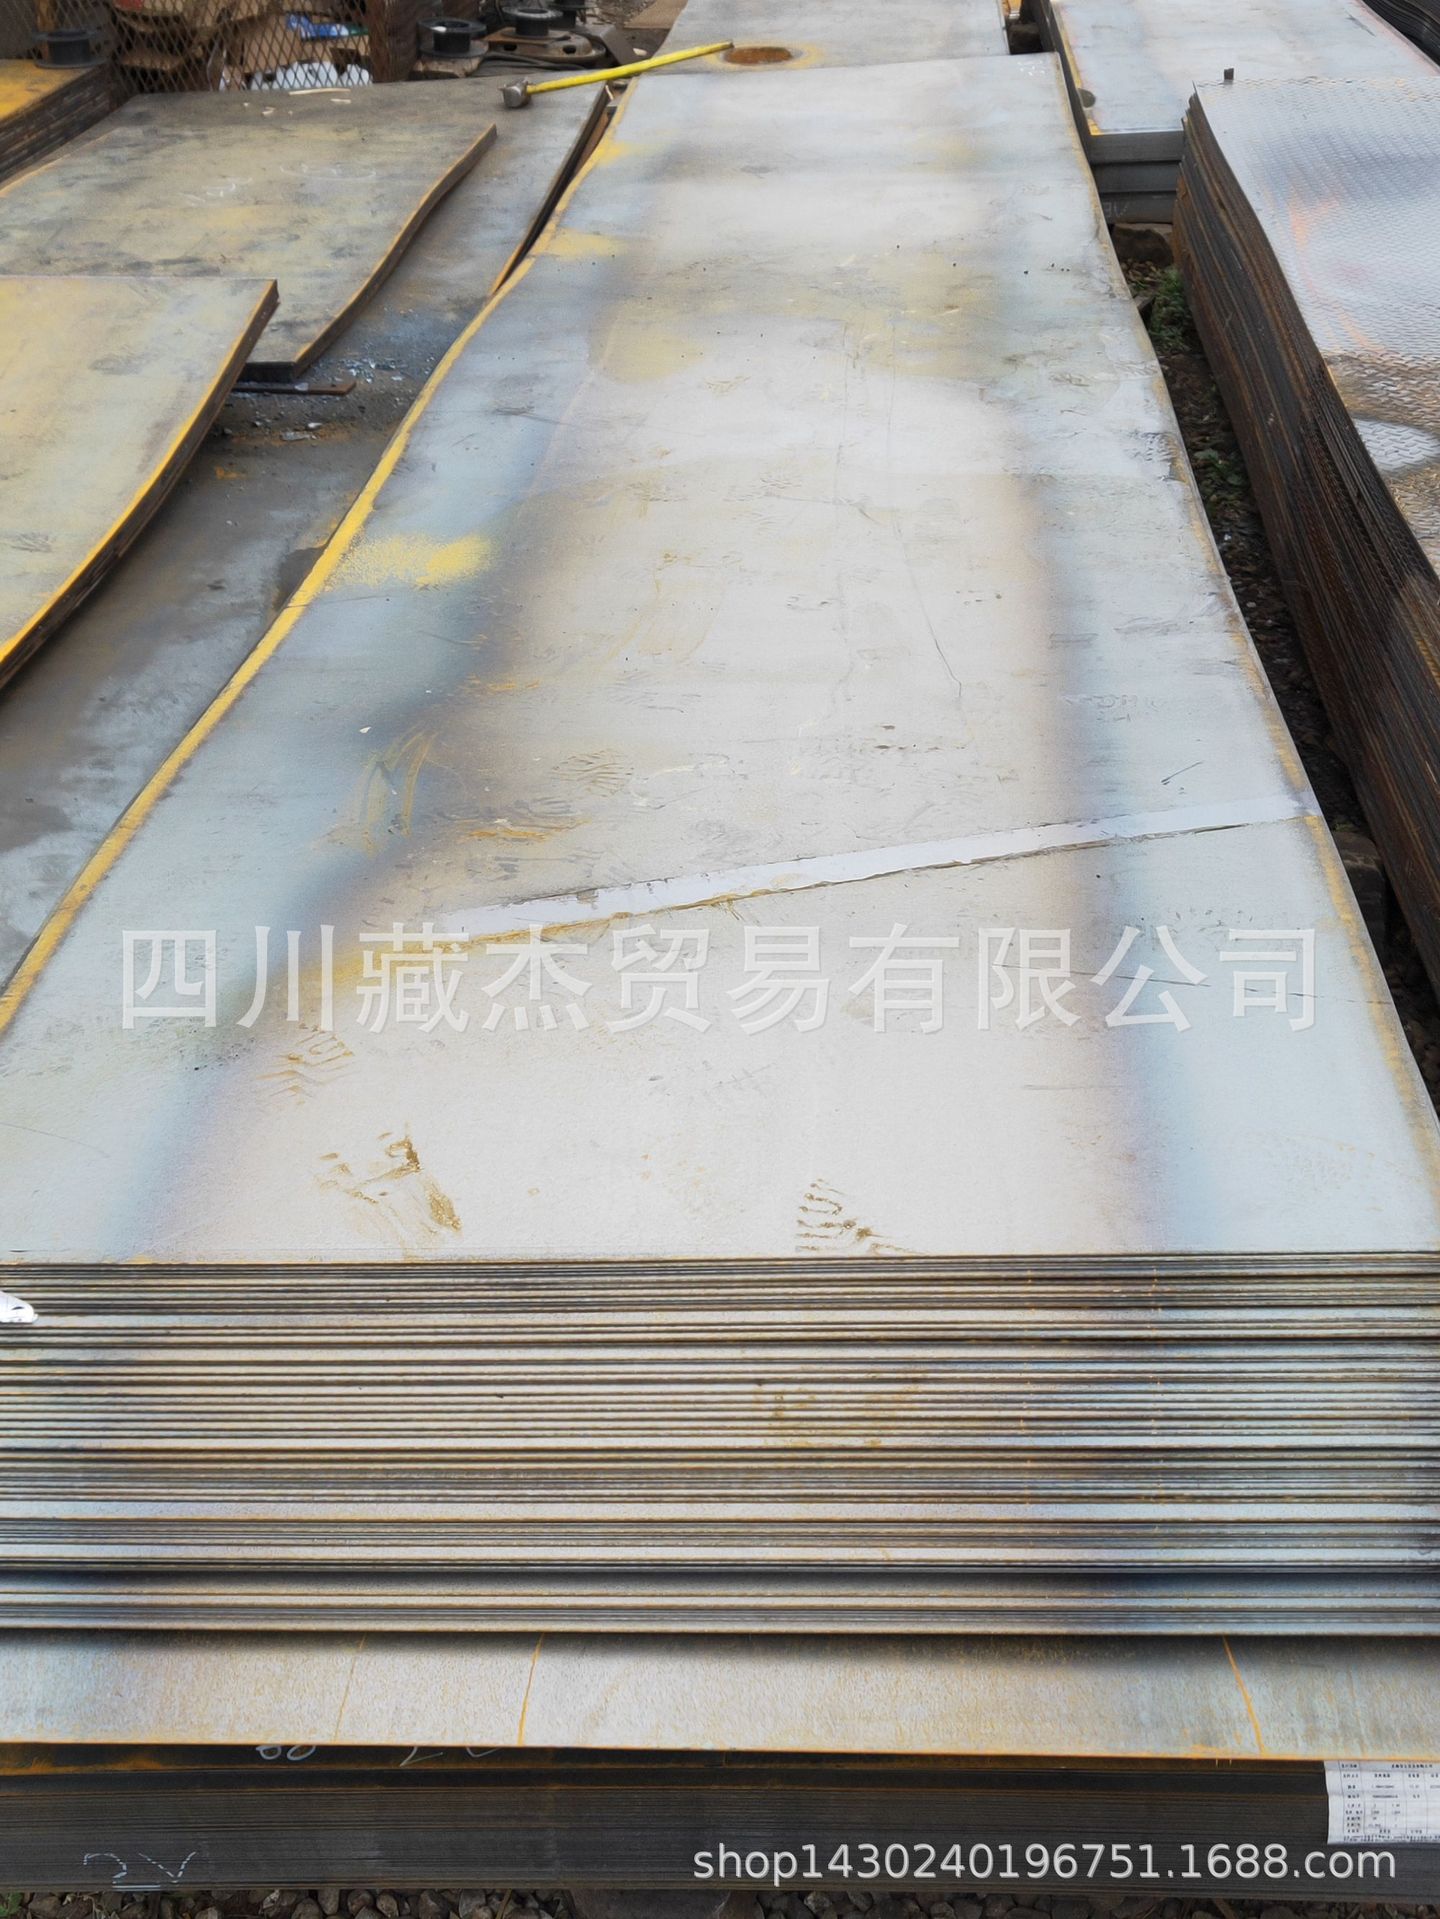 厂家直销 攀钢 重钢 Q235 普板 花纹板 规格齐全 价格优惠